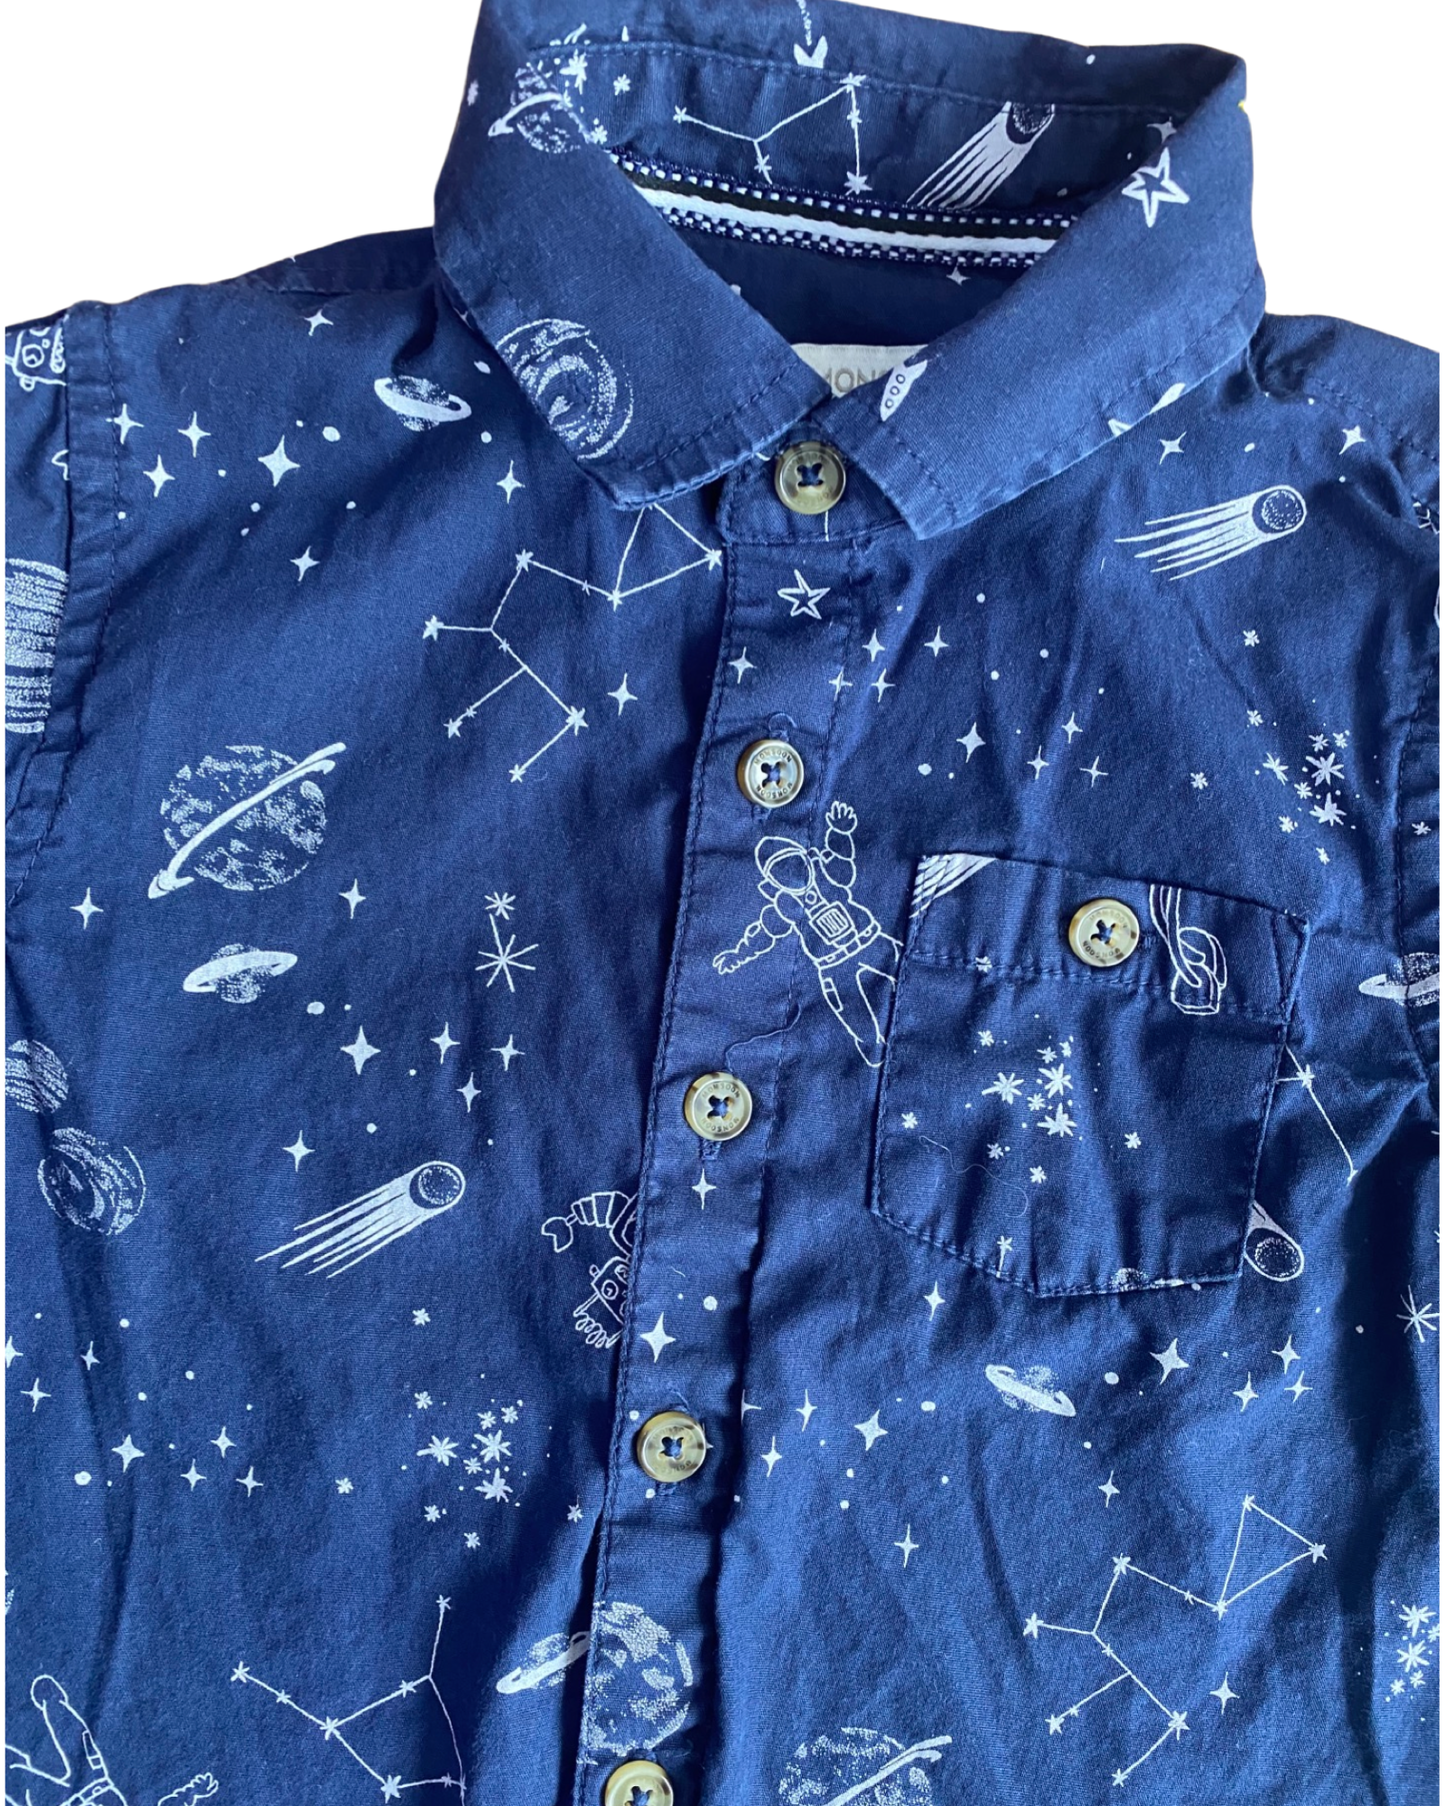 Monsoon space print navy cotton shirt (3-4yrs)